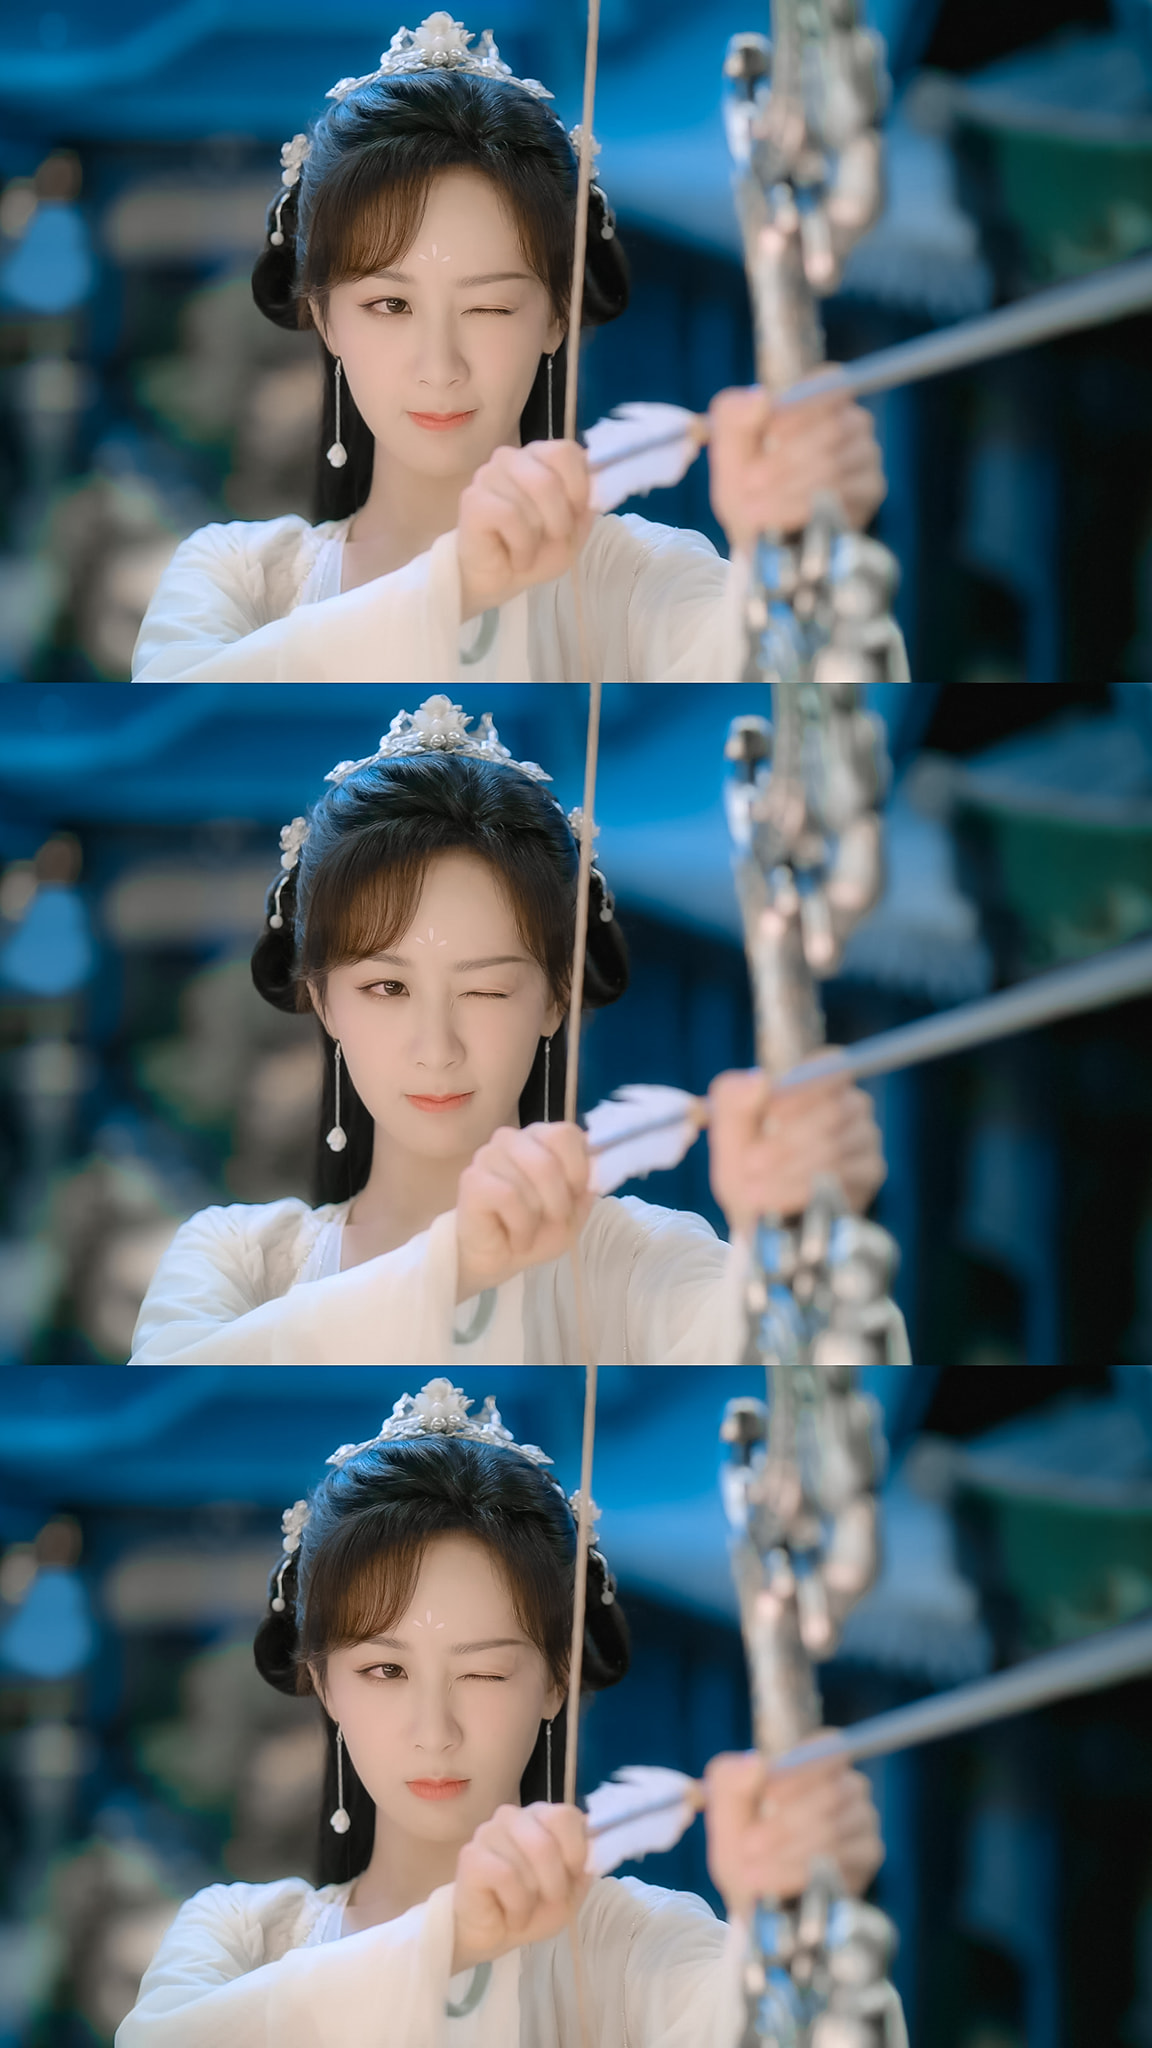 Dương Tử xuất hiện xinh đẹp trong phim cổ trang mới nhưng photoshop quá đà thế nào mà mặt bé ngang cổ  - Ảnh 6.